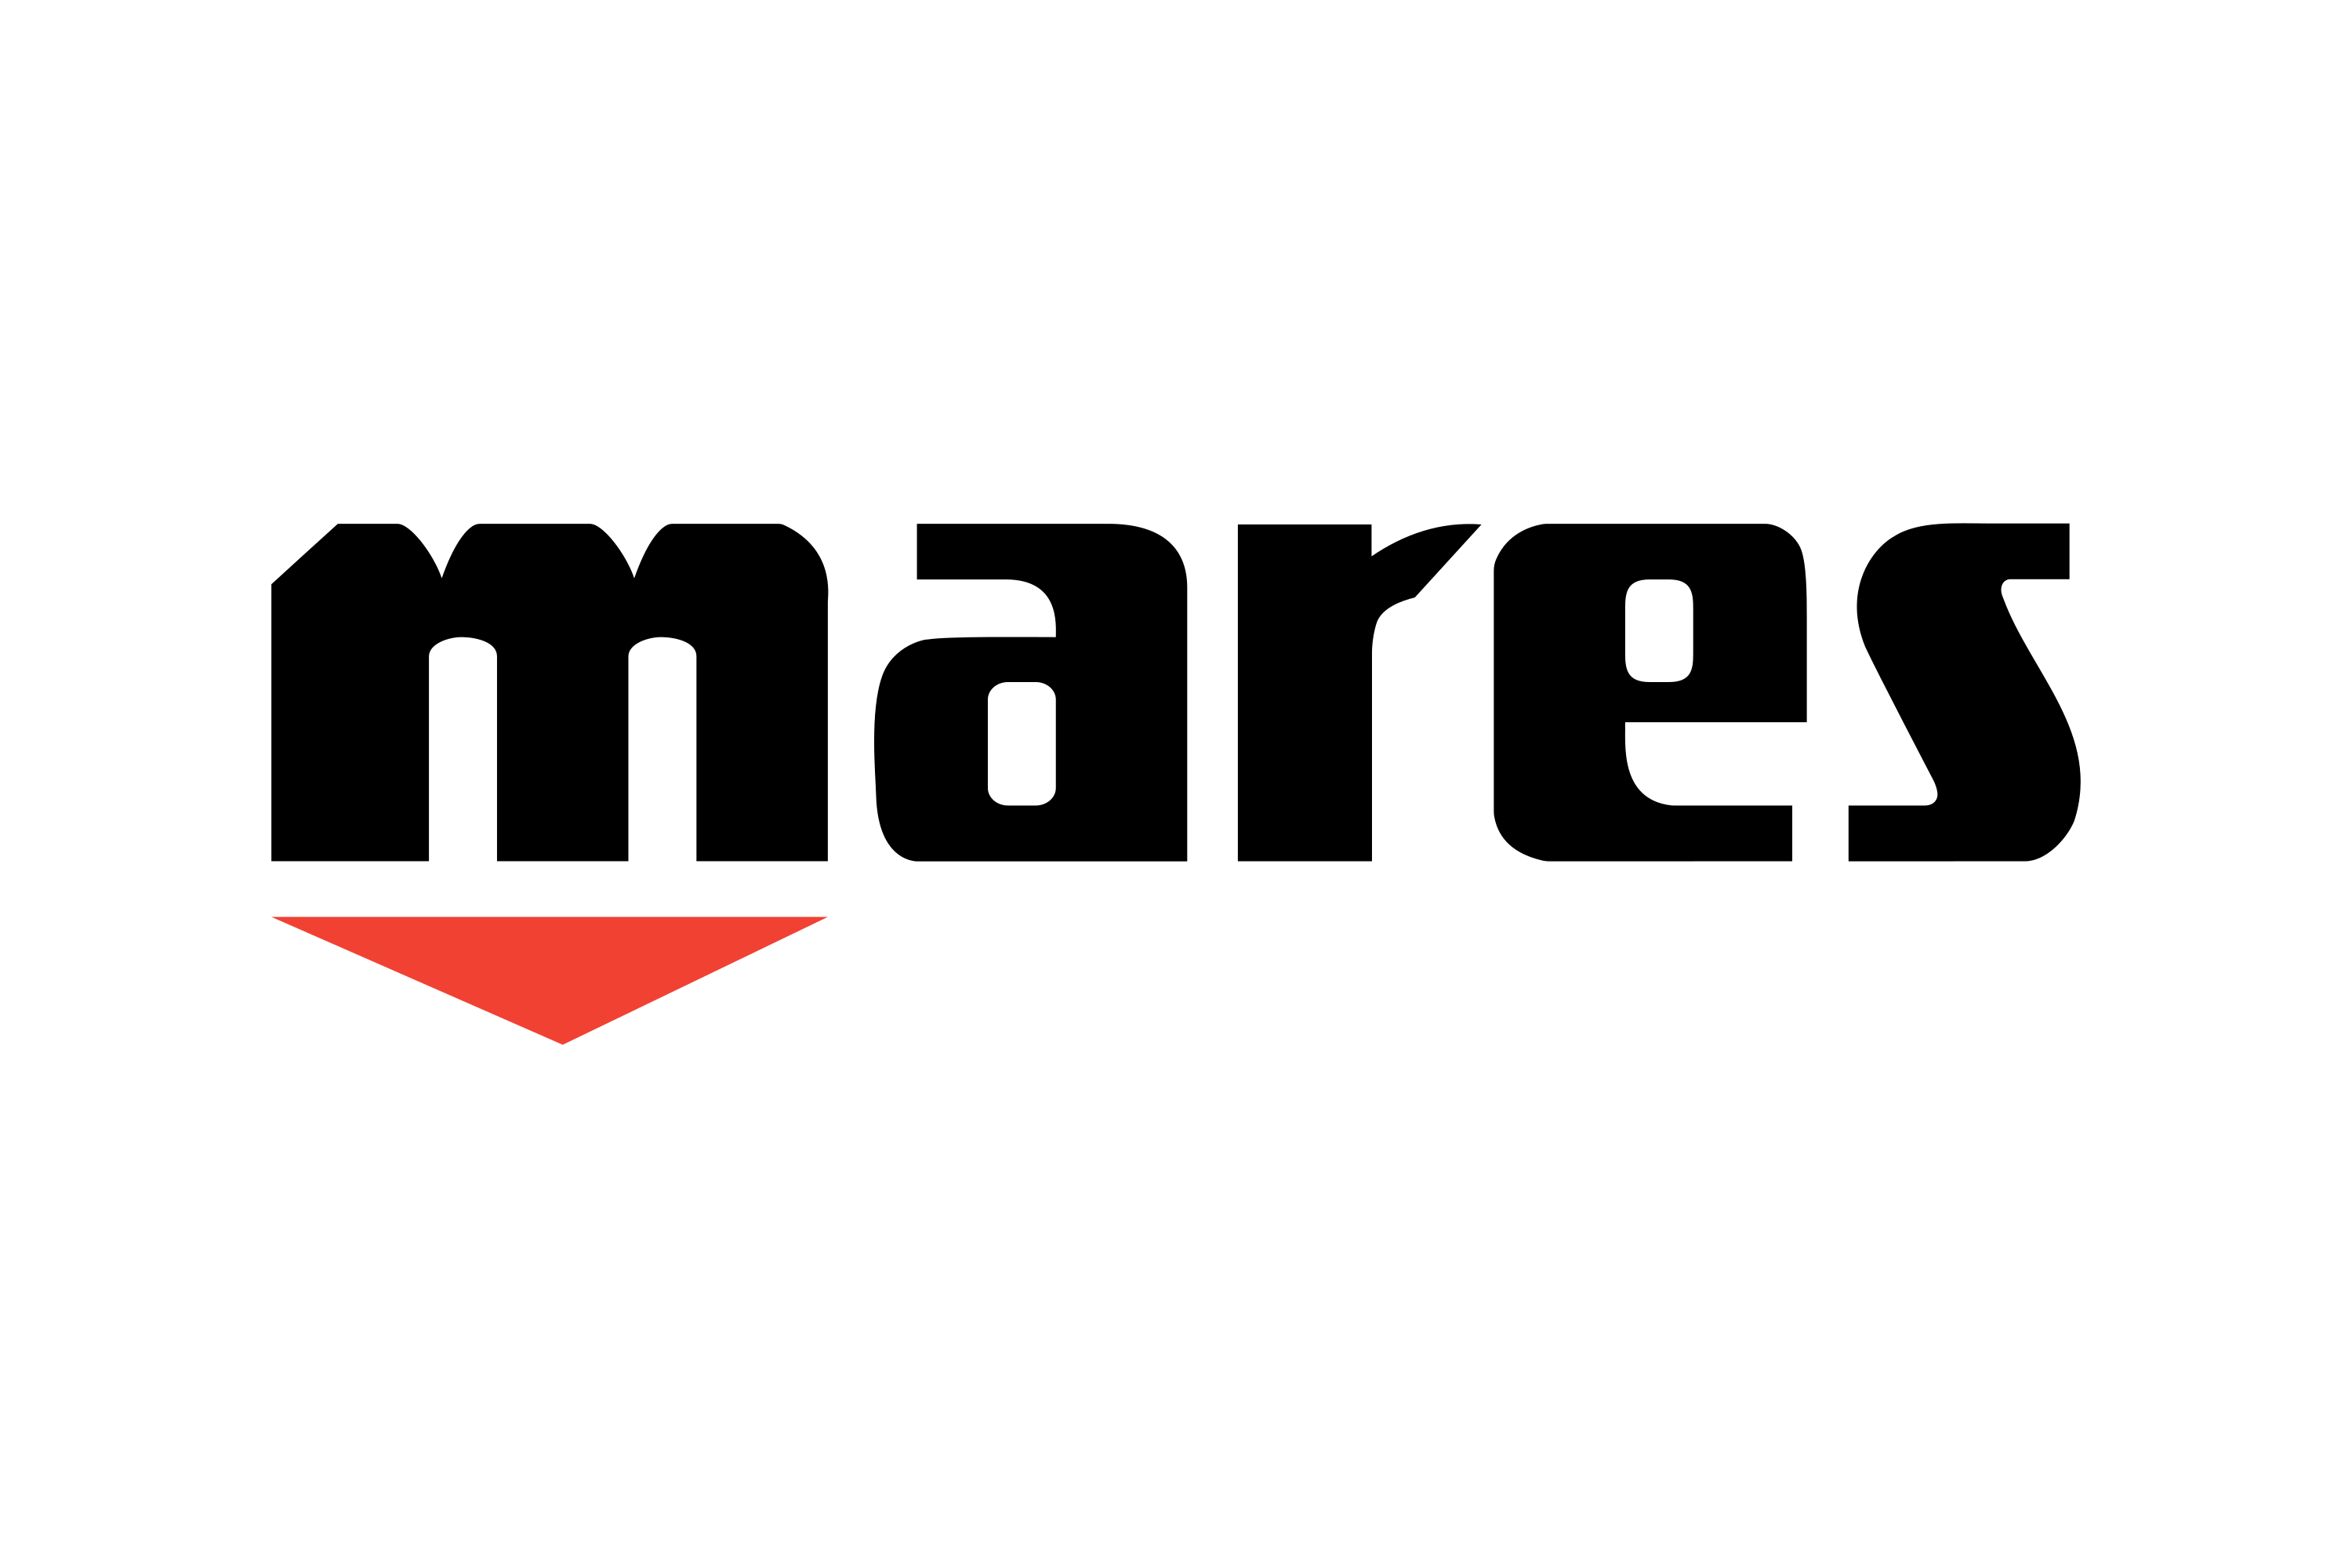 Download Mares Logo in SVG Vector or PNG File Format - Logo.wine